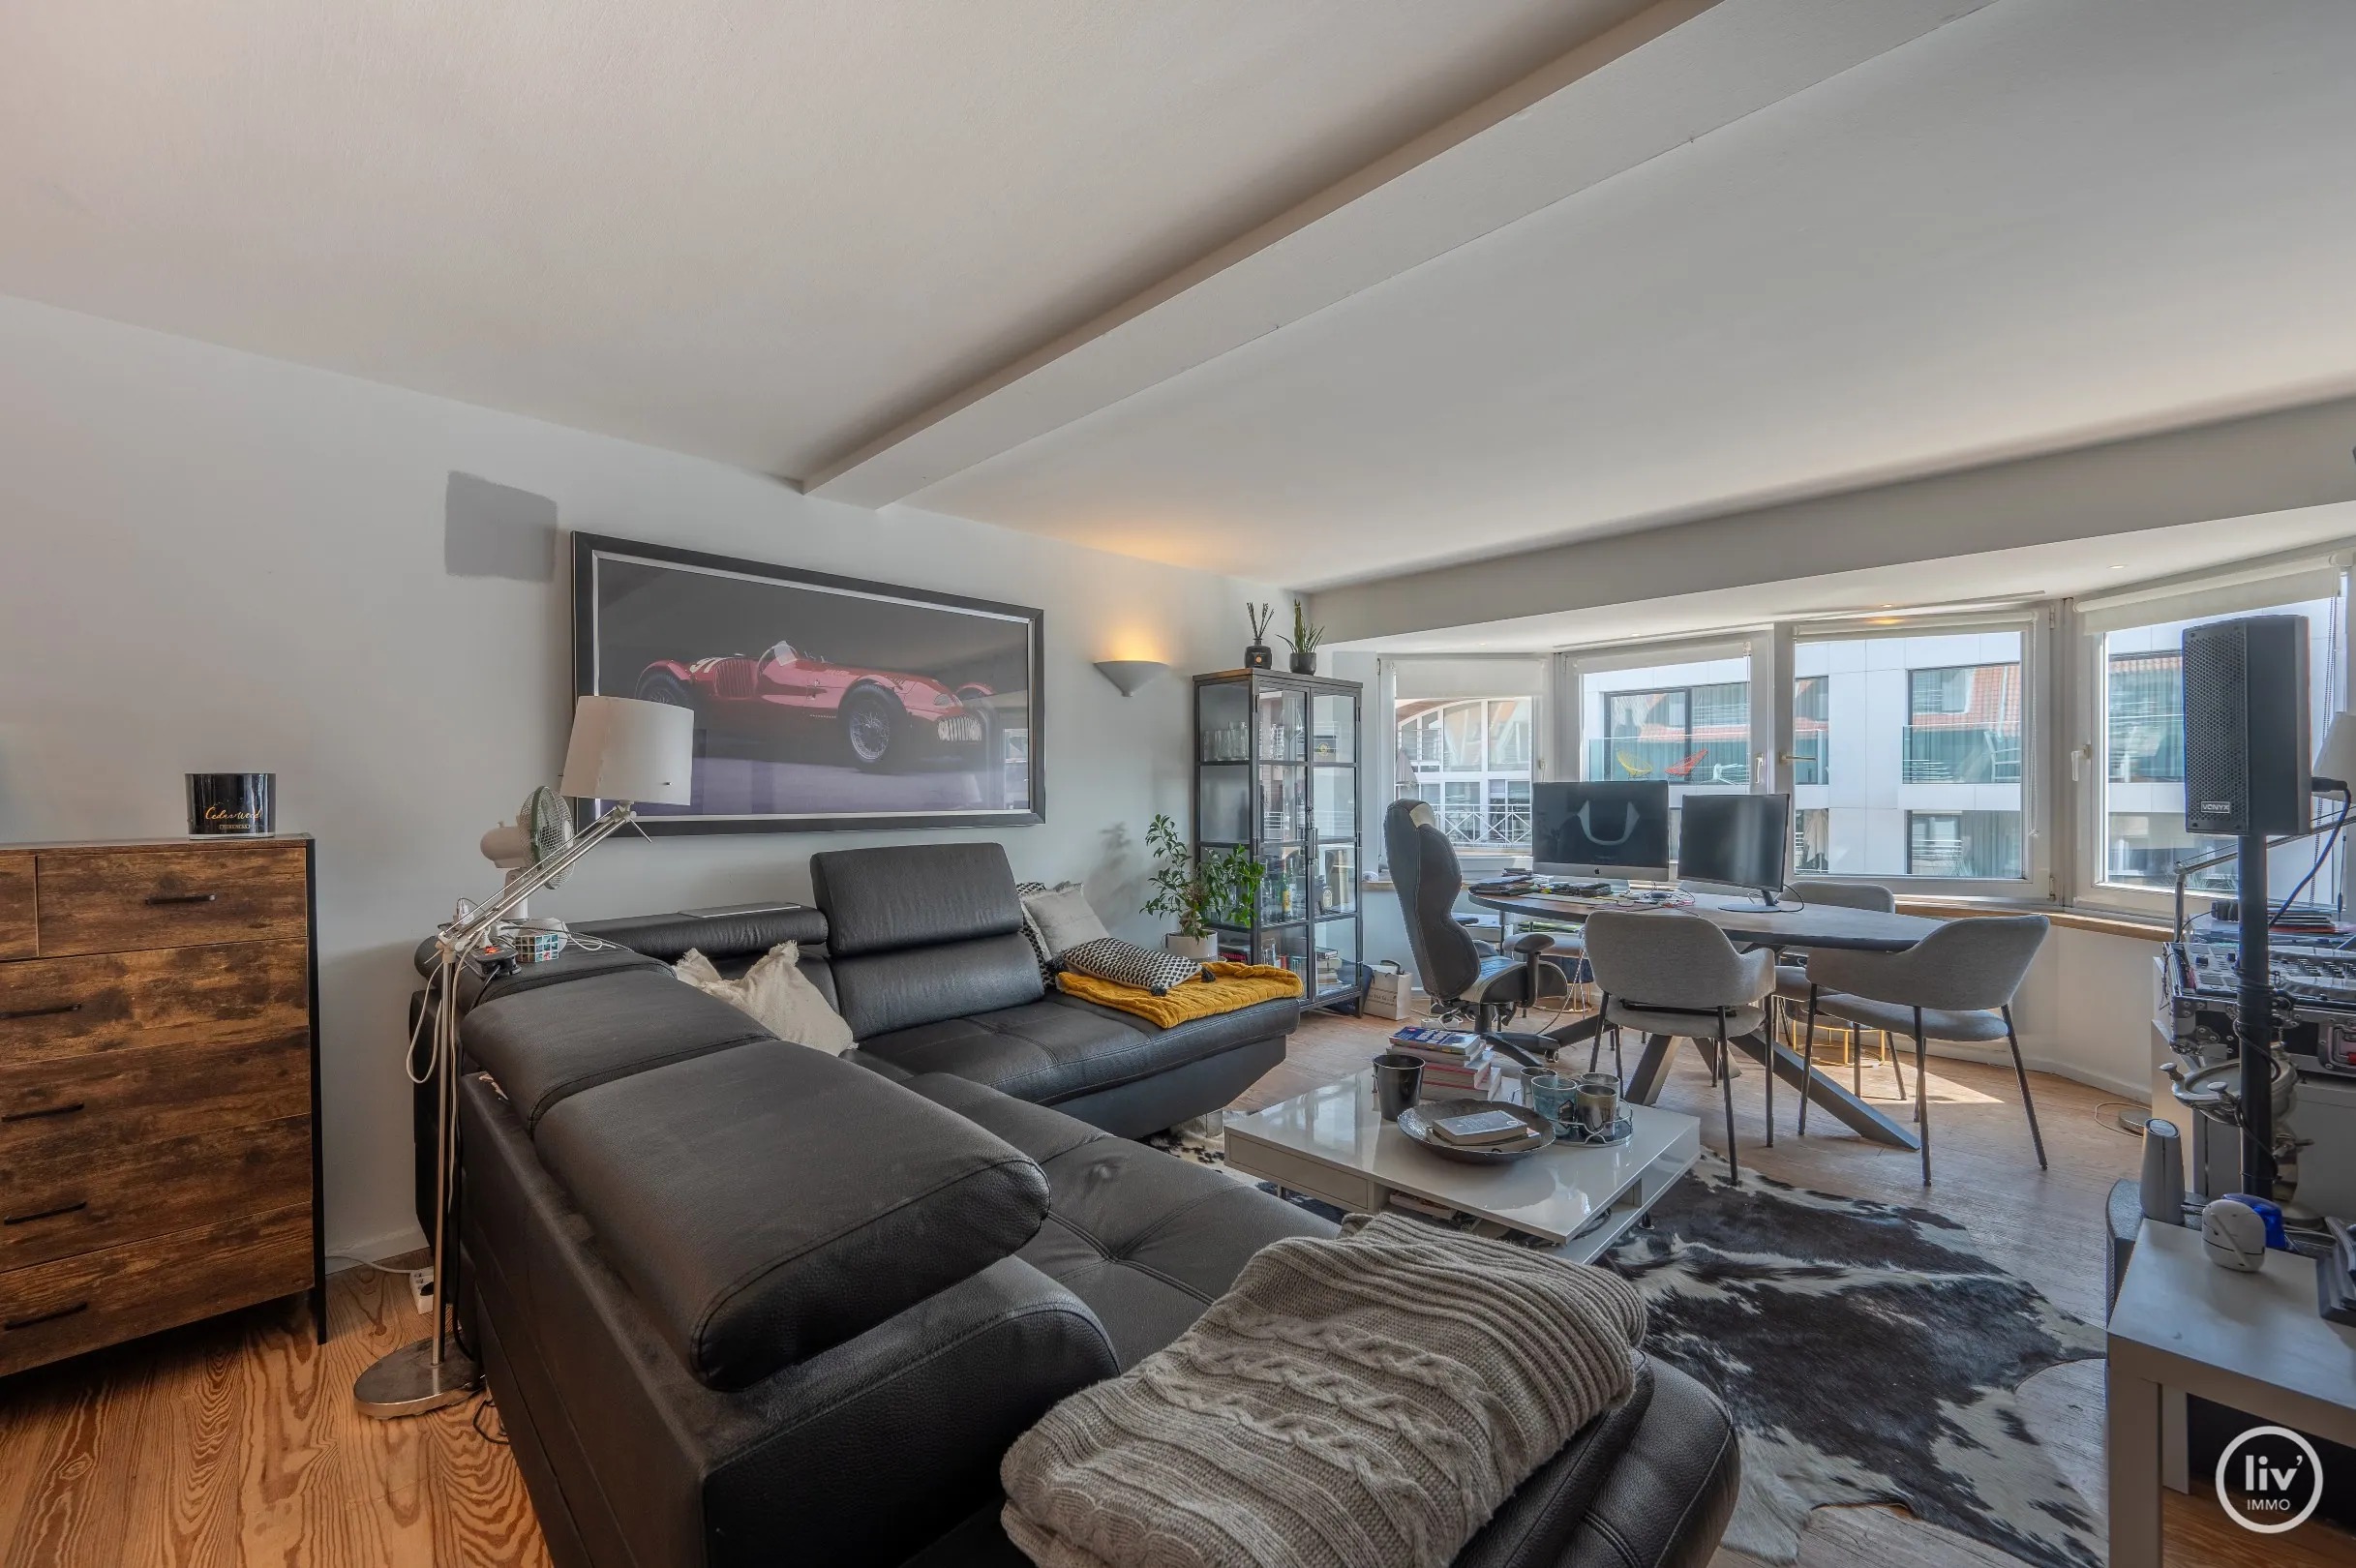 Appartement confortable de 2 chambres idéalement situé sur l'avenue Parmentier à Knokke.